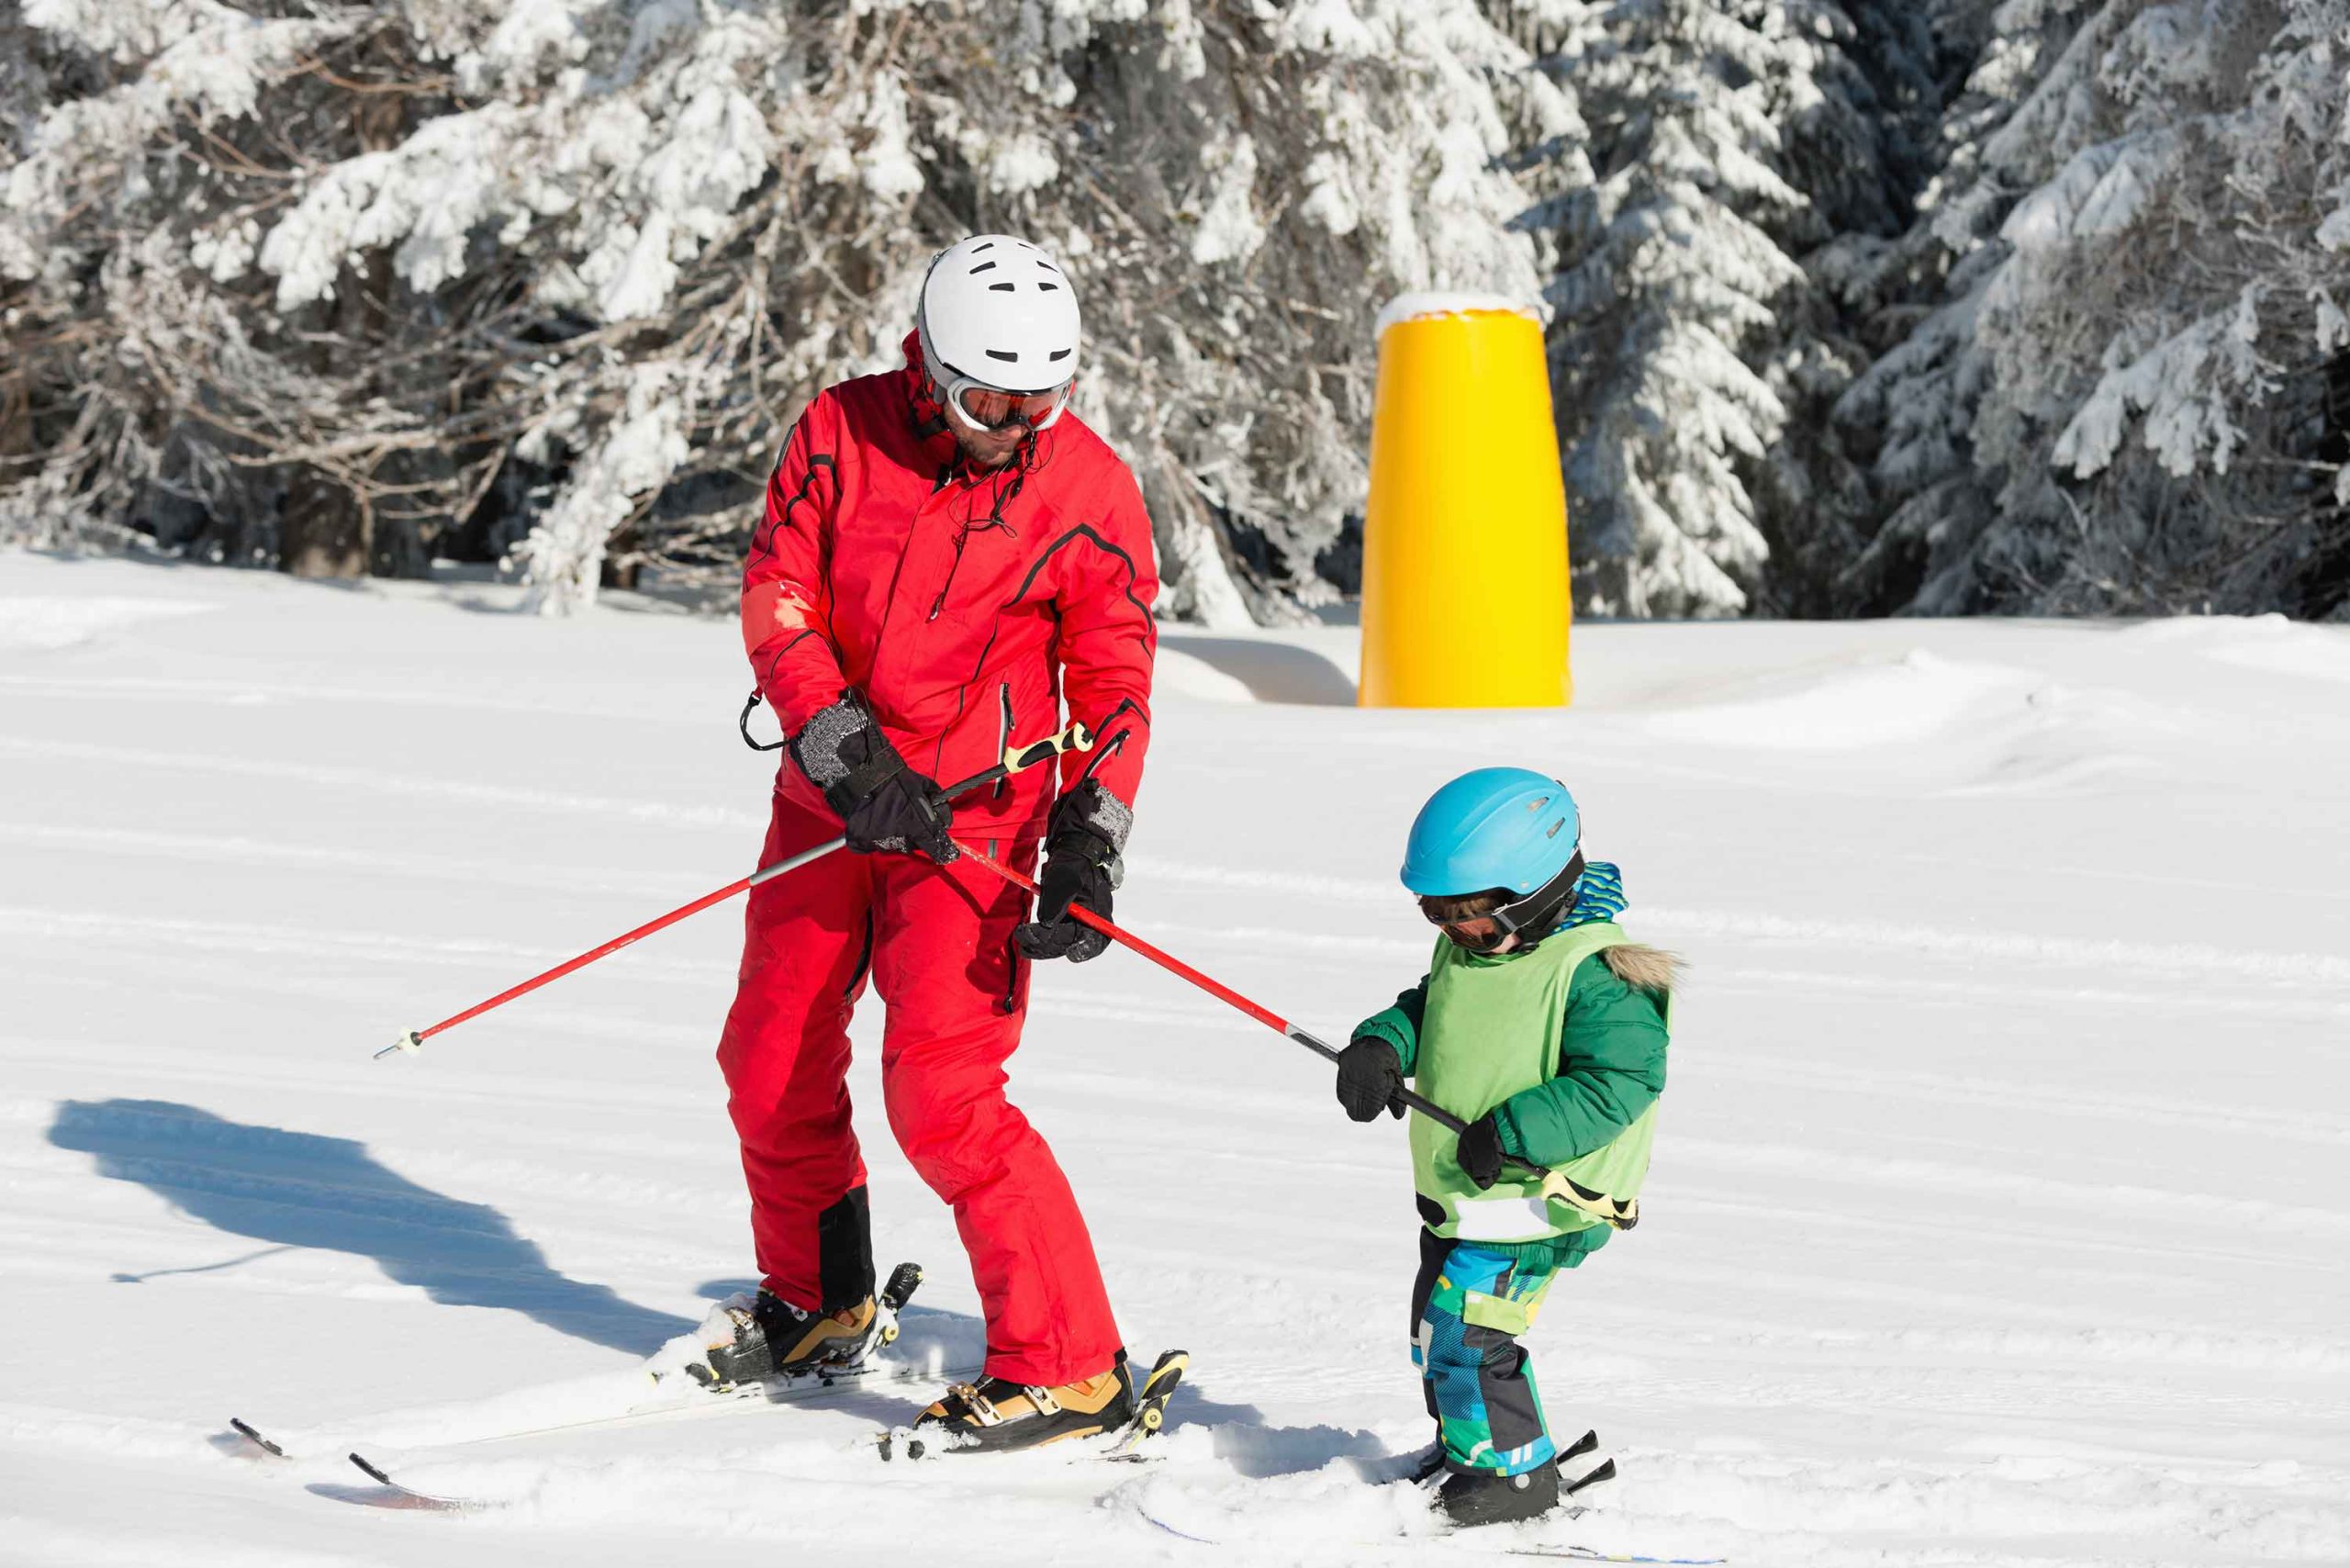 Ski teacher study child how to ride ski